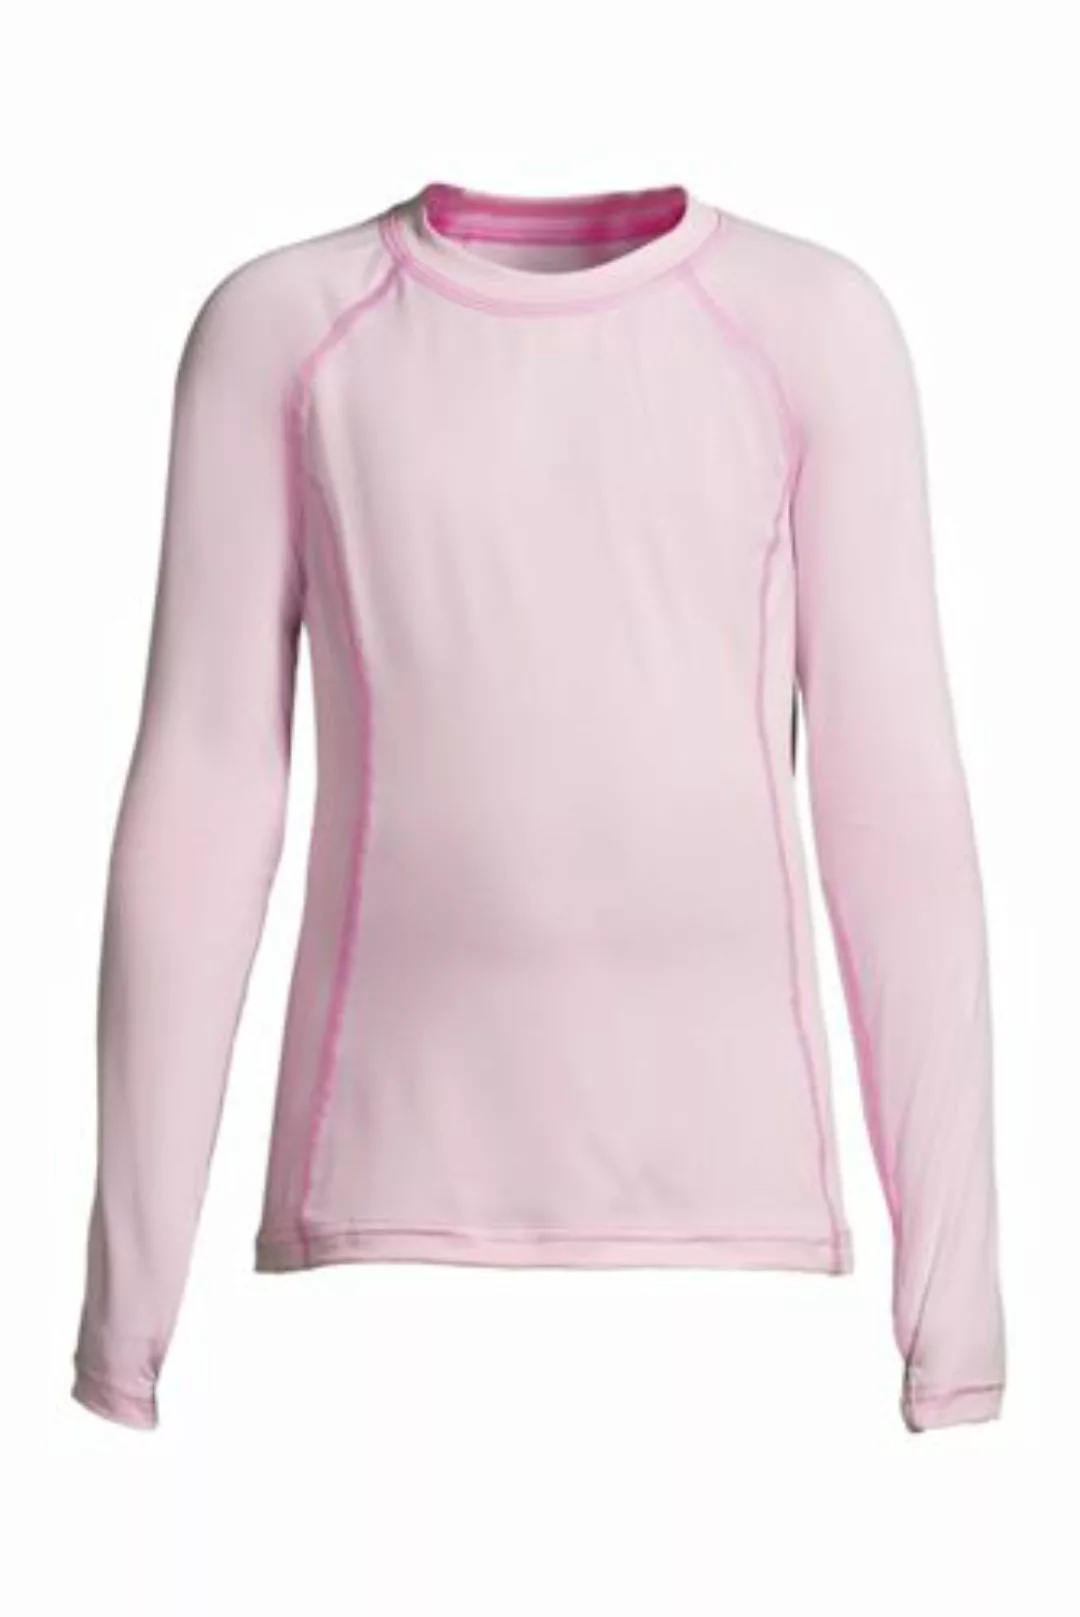 Funktionsshirt THERMASKIN, Größe: 128-134, Pink, Jersey, by Lands' End, Duf günstig online kaufen